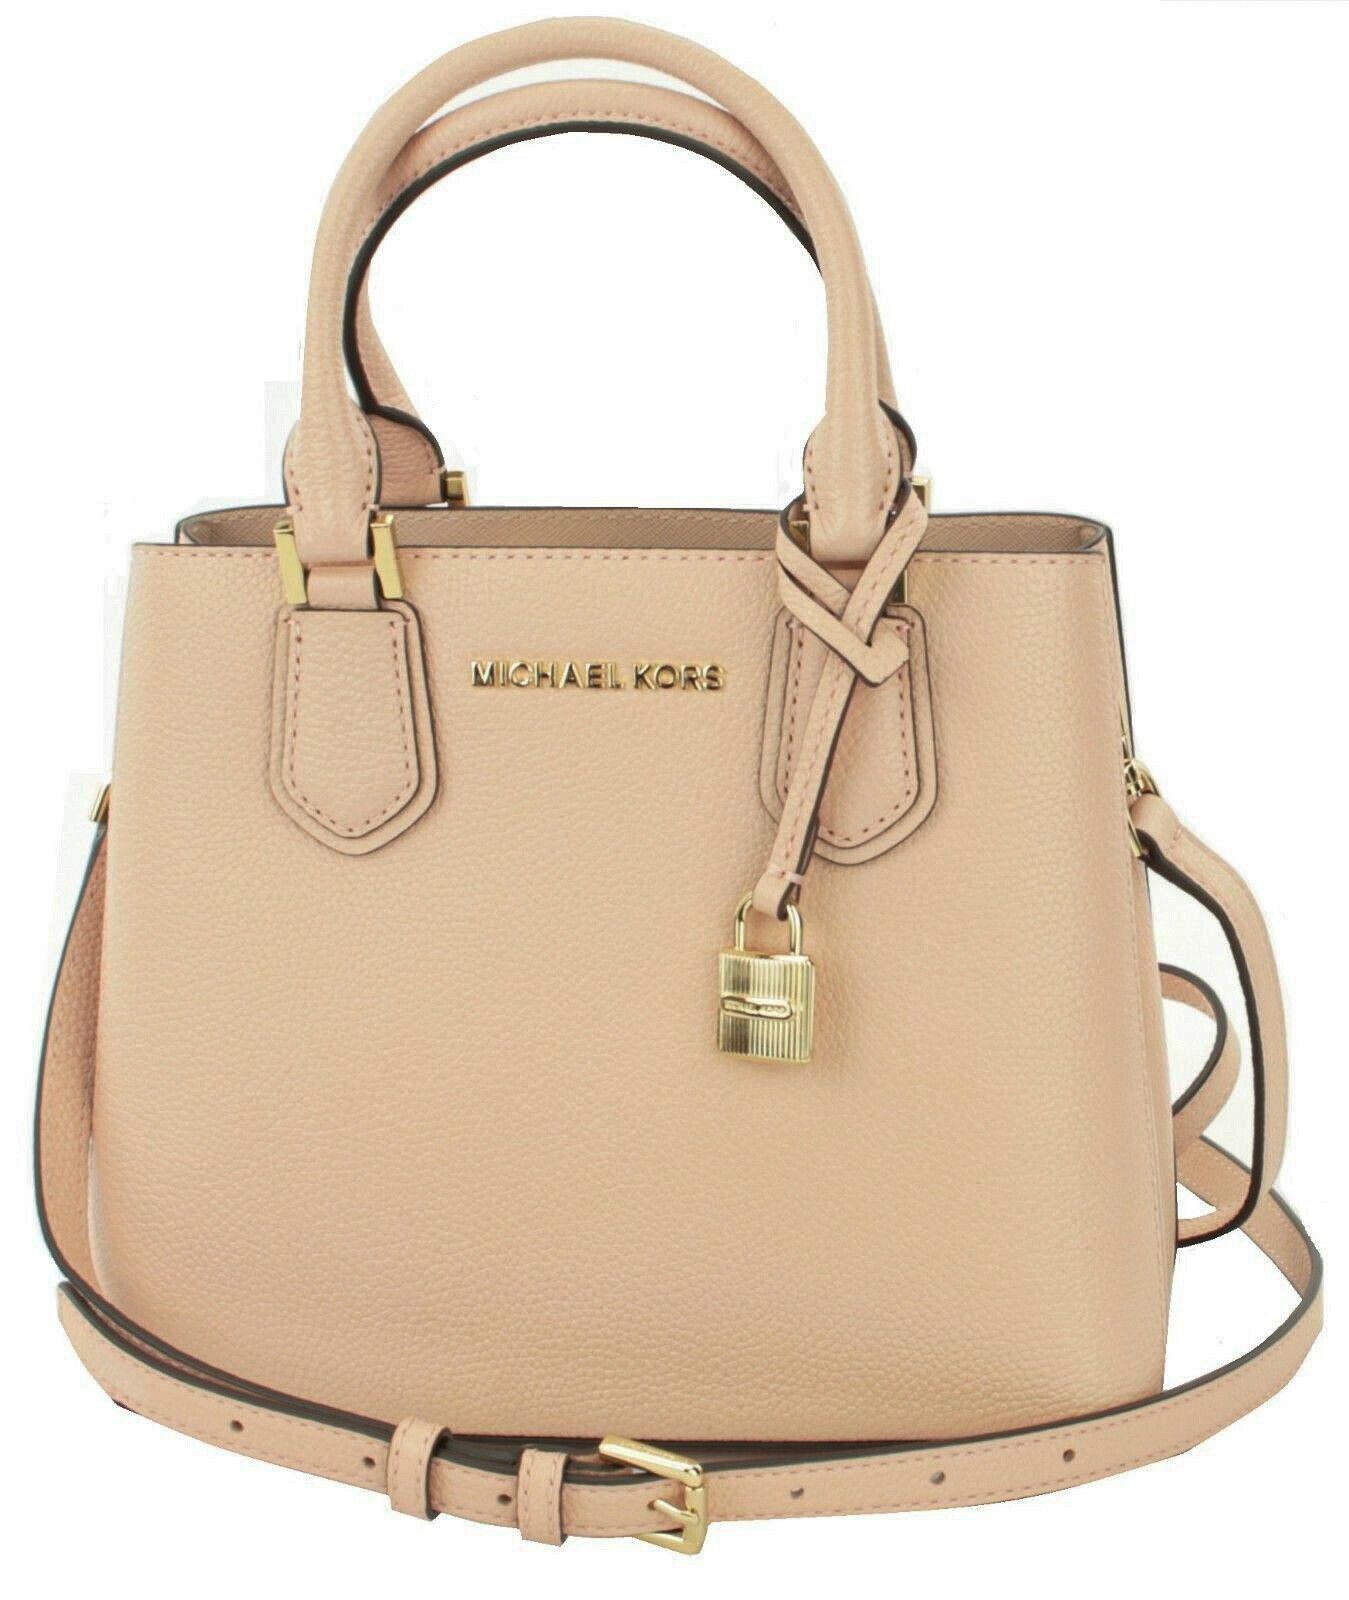 Michael Kors Adele Satchel Messenger Bag Pastel Pink Leather Handbag